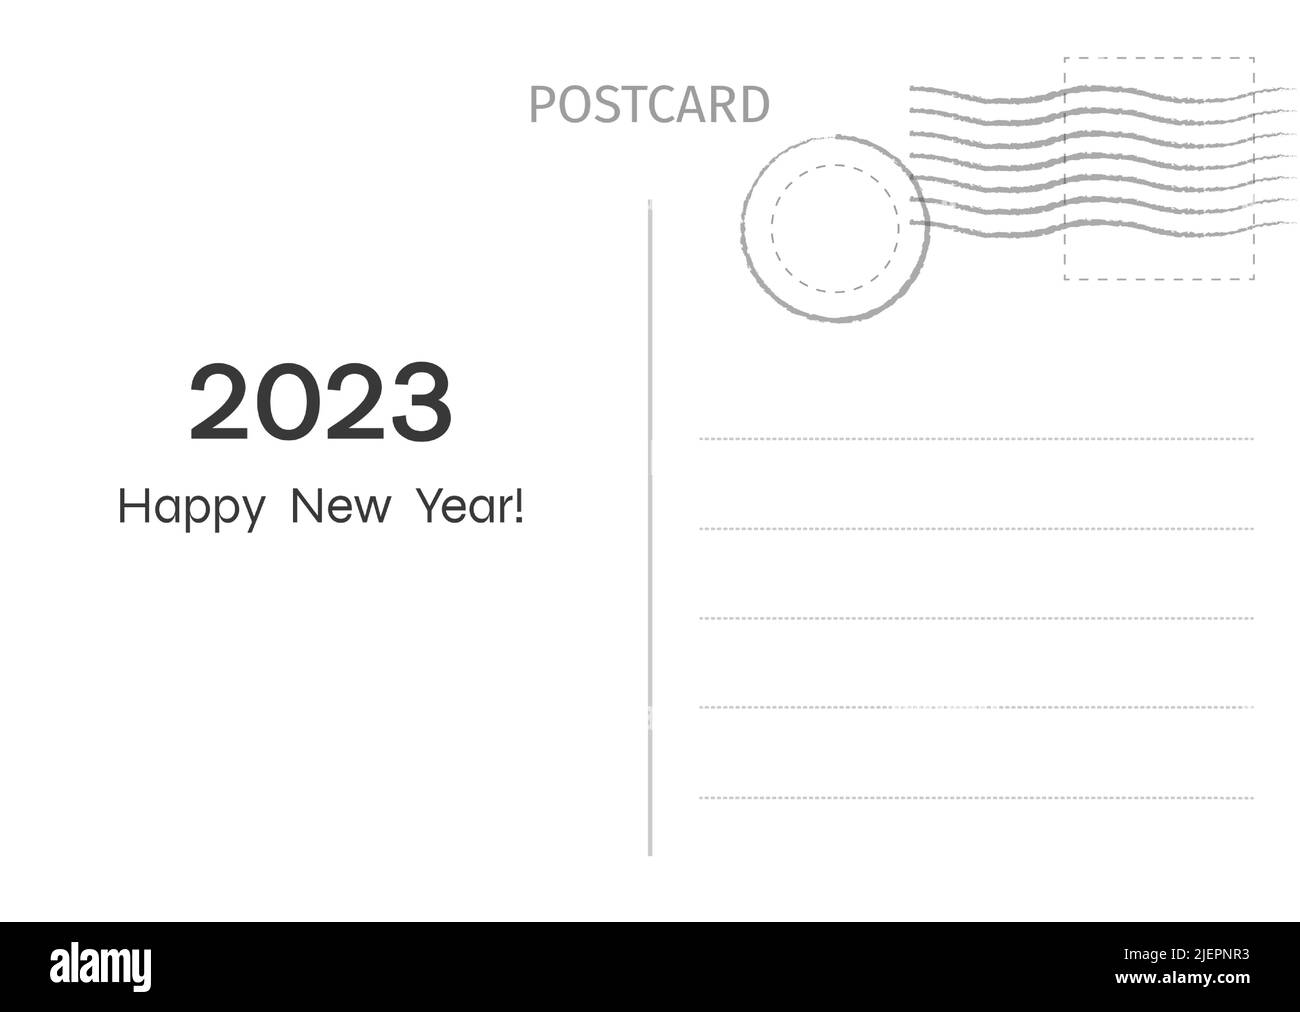 Grußkarte zum 2023. Guten Rutsch. Postkarte. Abbildung der Postkarte für die Gestaltung. Vektorgrafik. Stock Vektor